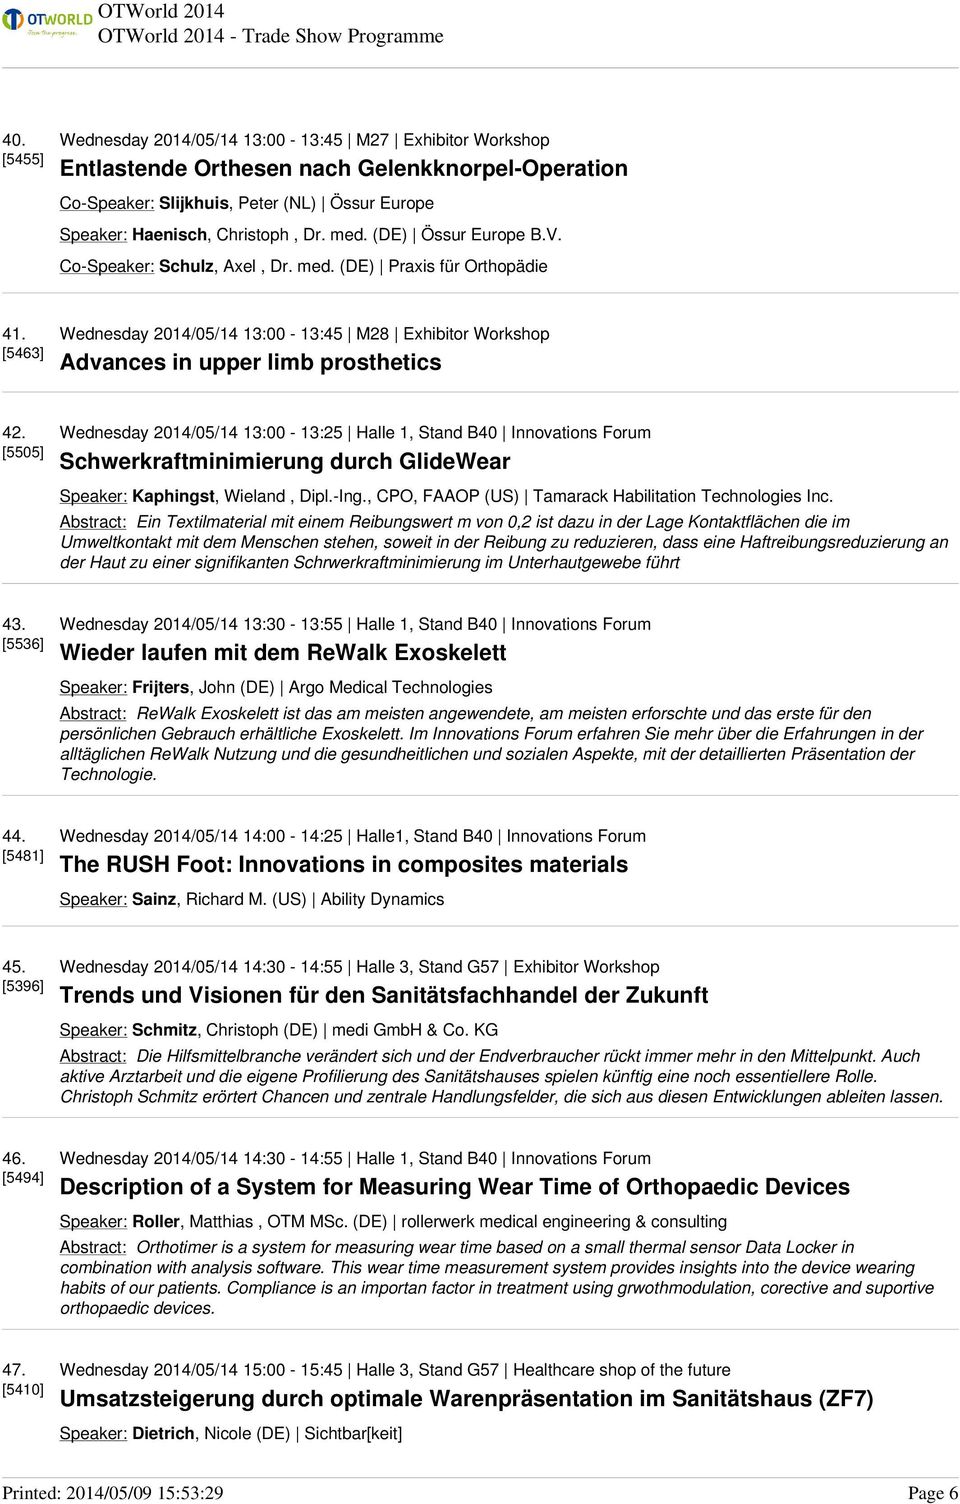 [5505] Wednesday 2014/05/14 13:00-13:25 Halle 1, Stand B40 Innovations Forum Schwerkraftminimierung durch GlideWear Speaker: Kaphingst, Wieland, Dipl.-Ing.